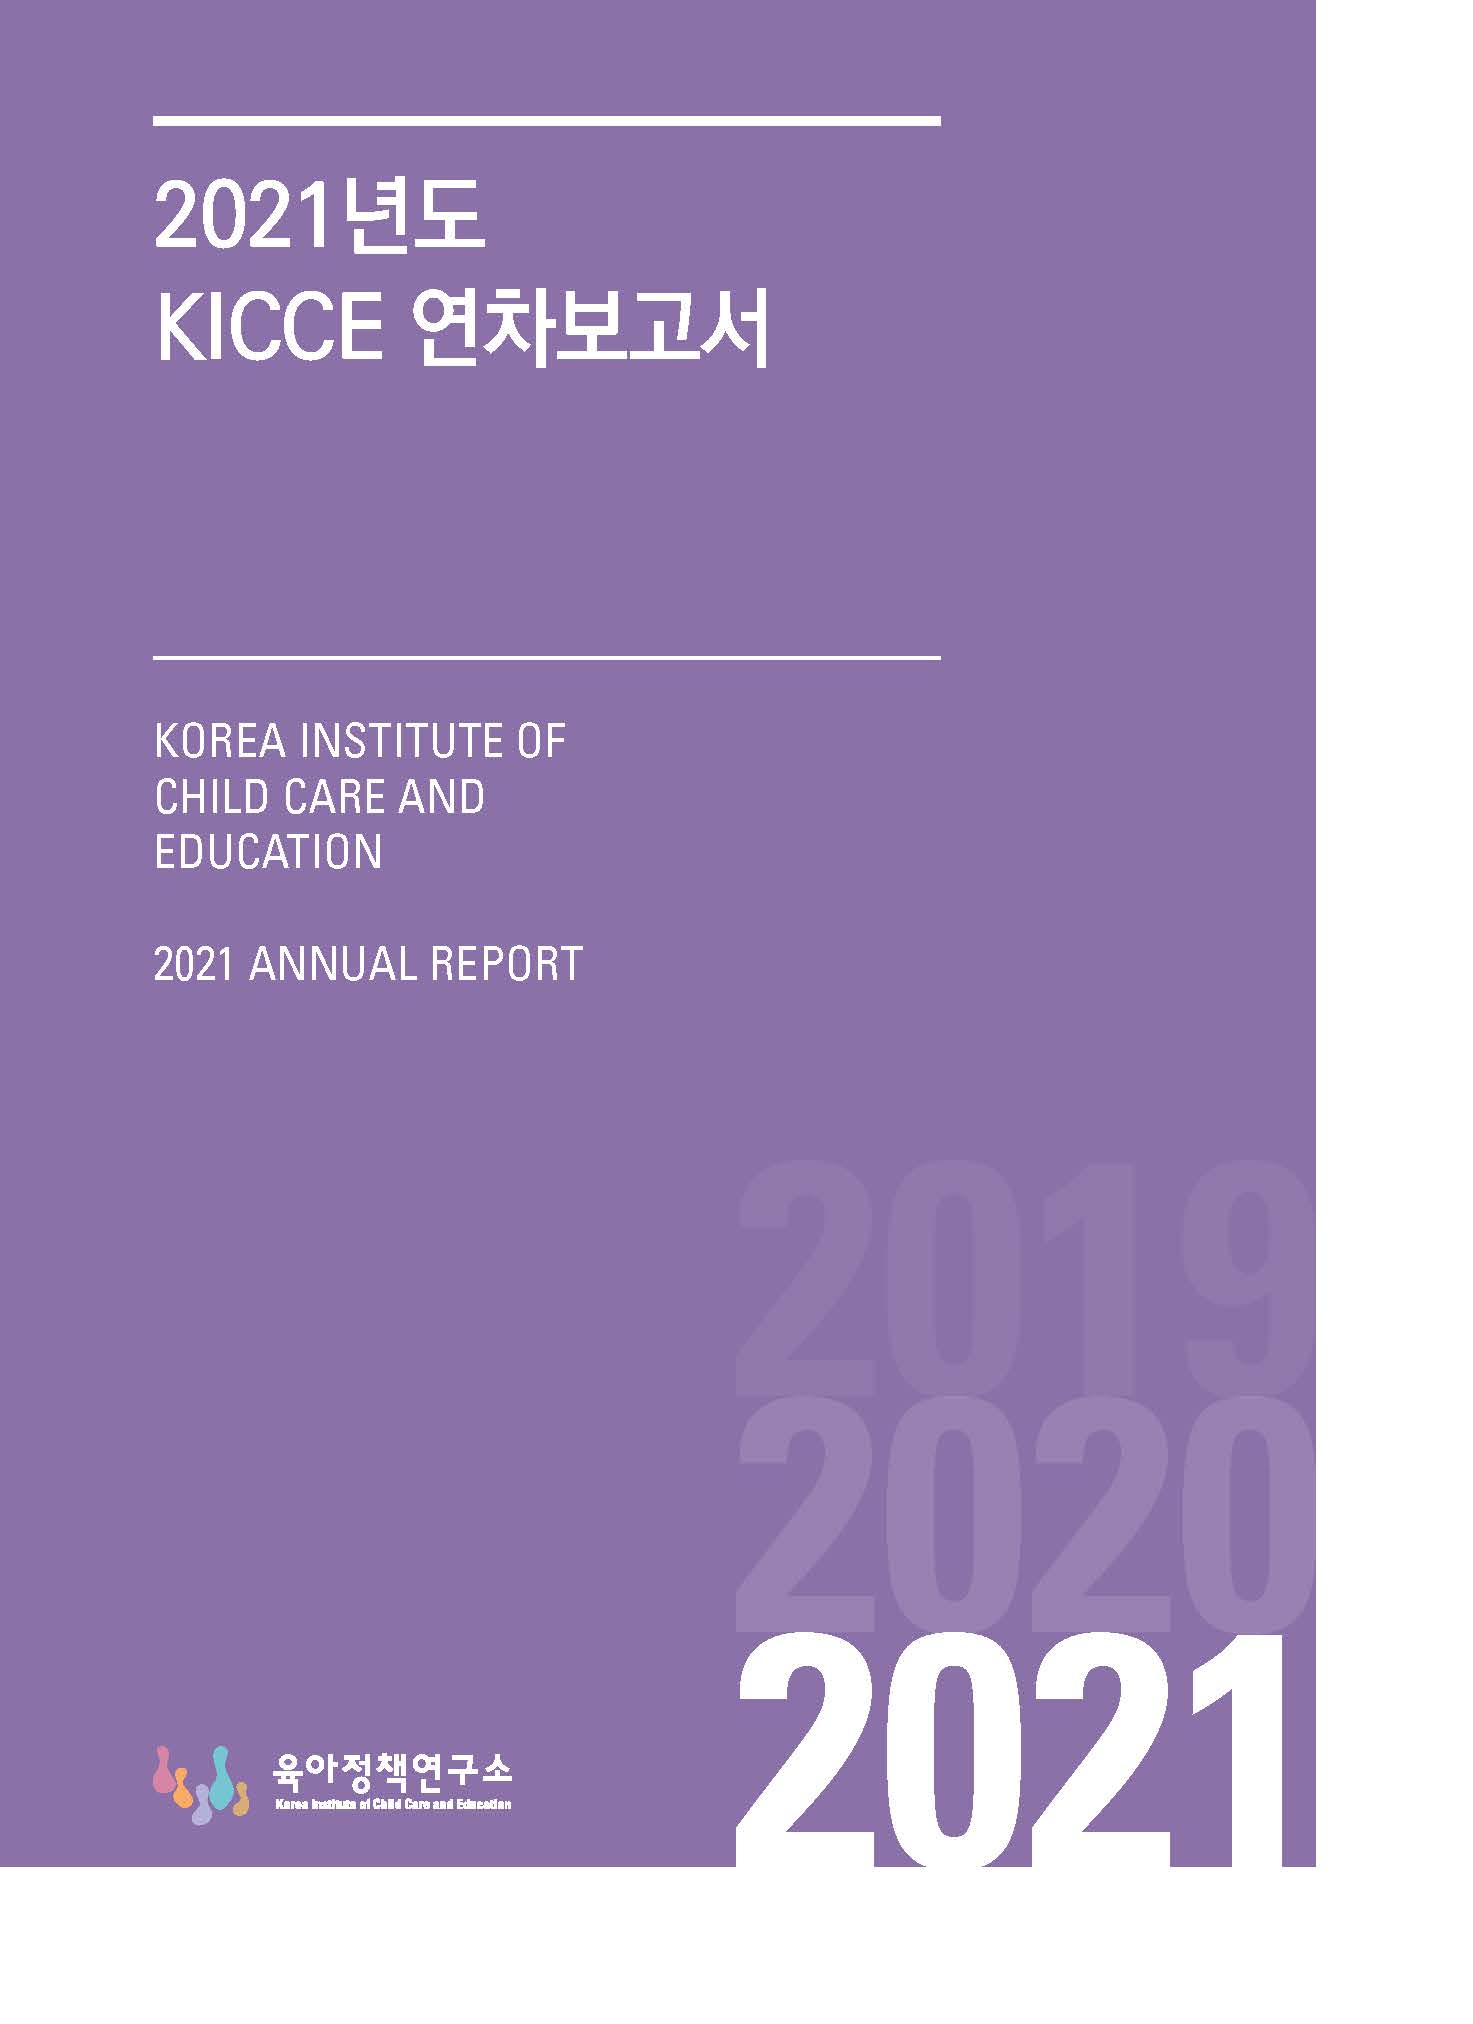 2021년 KICCE 연차보고서 표지 이미지 입니다.